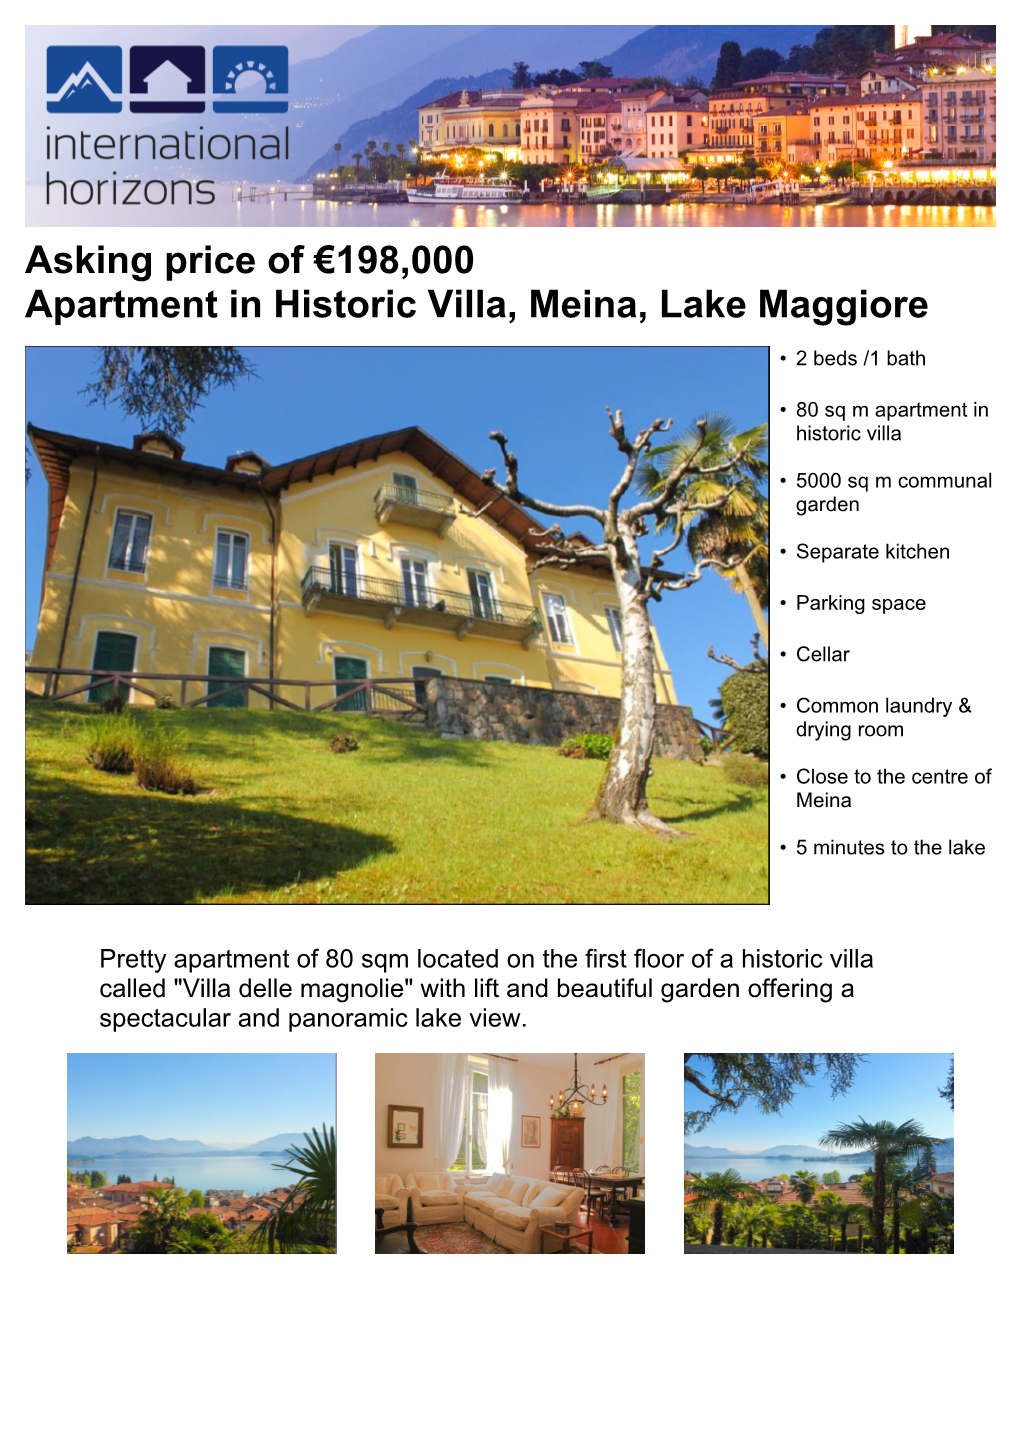 Asking Price of €198,000 Apartment in Historic Villa, Meina, Lake Maggiore